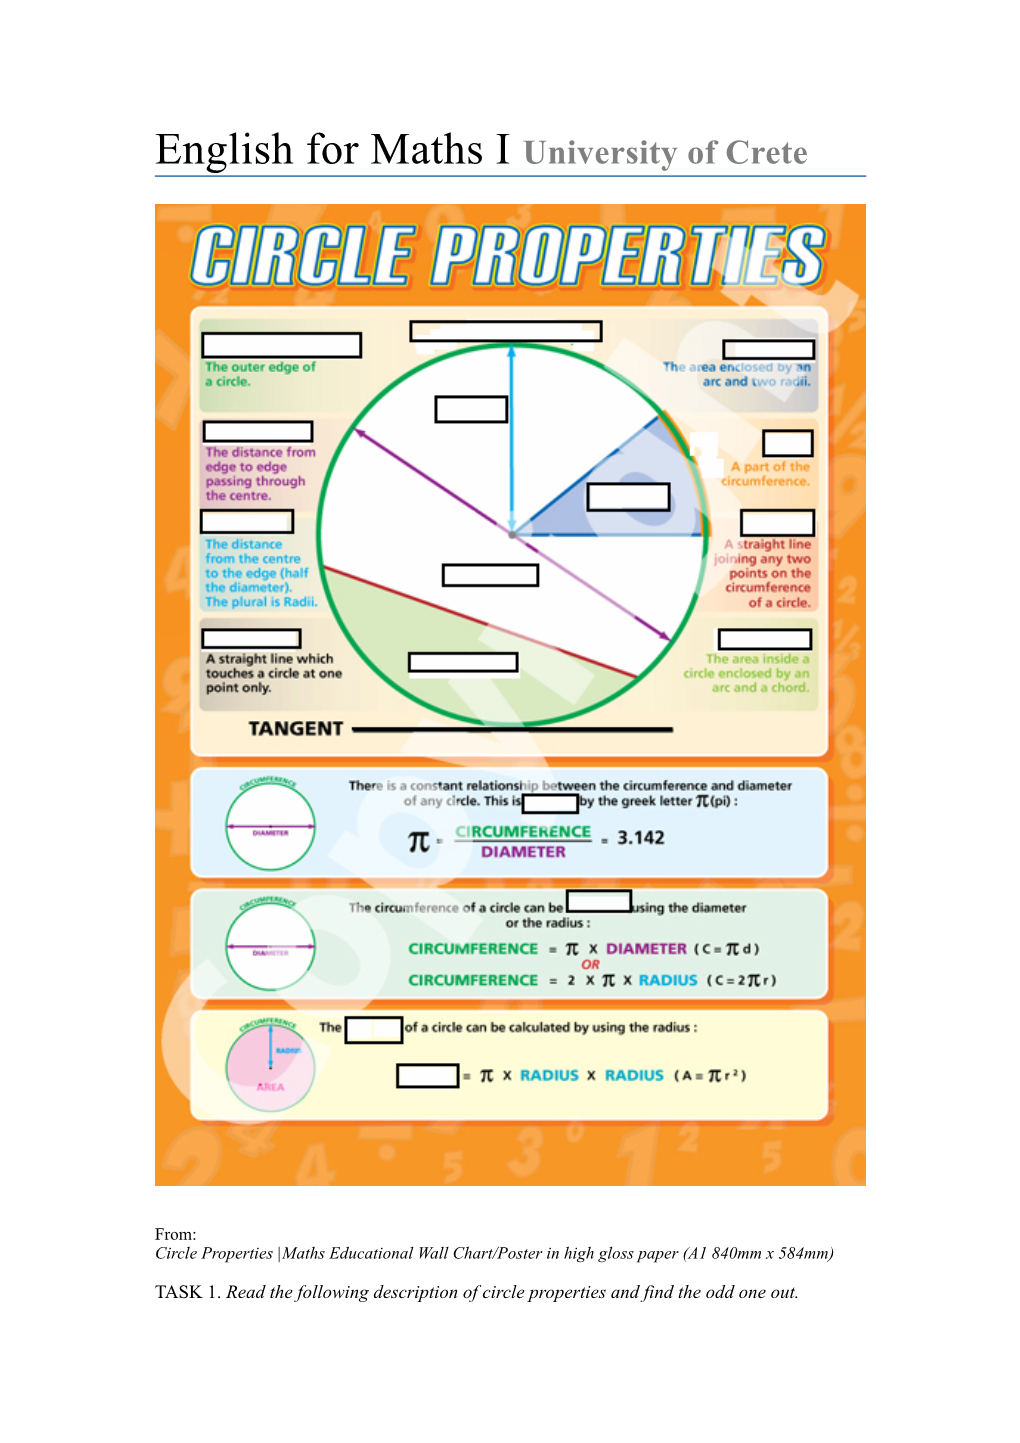 Wk 6 Circle Properties Texts and Tasks